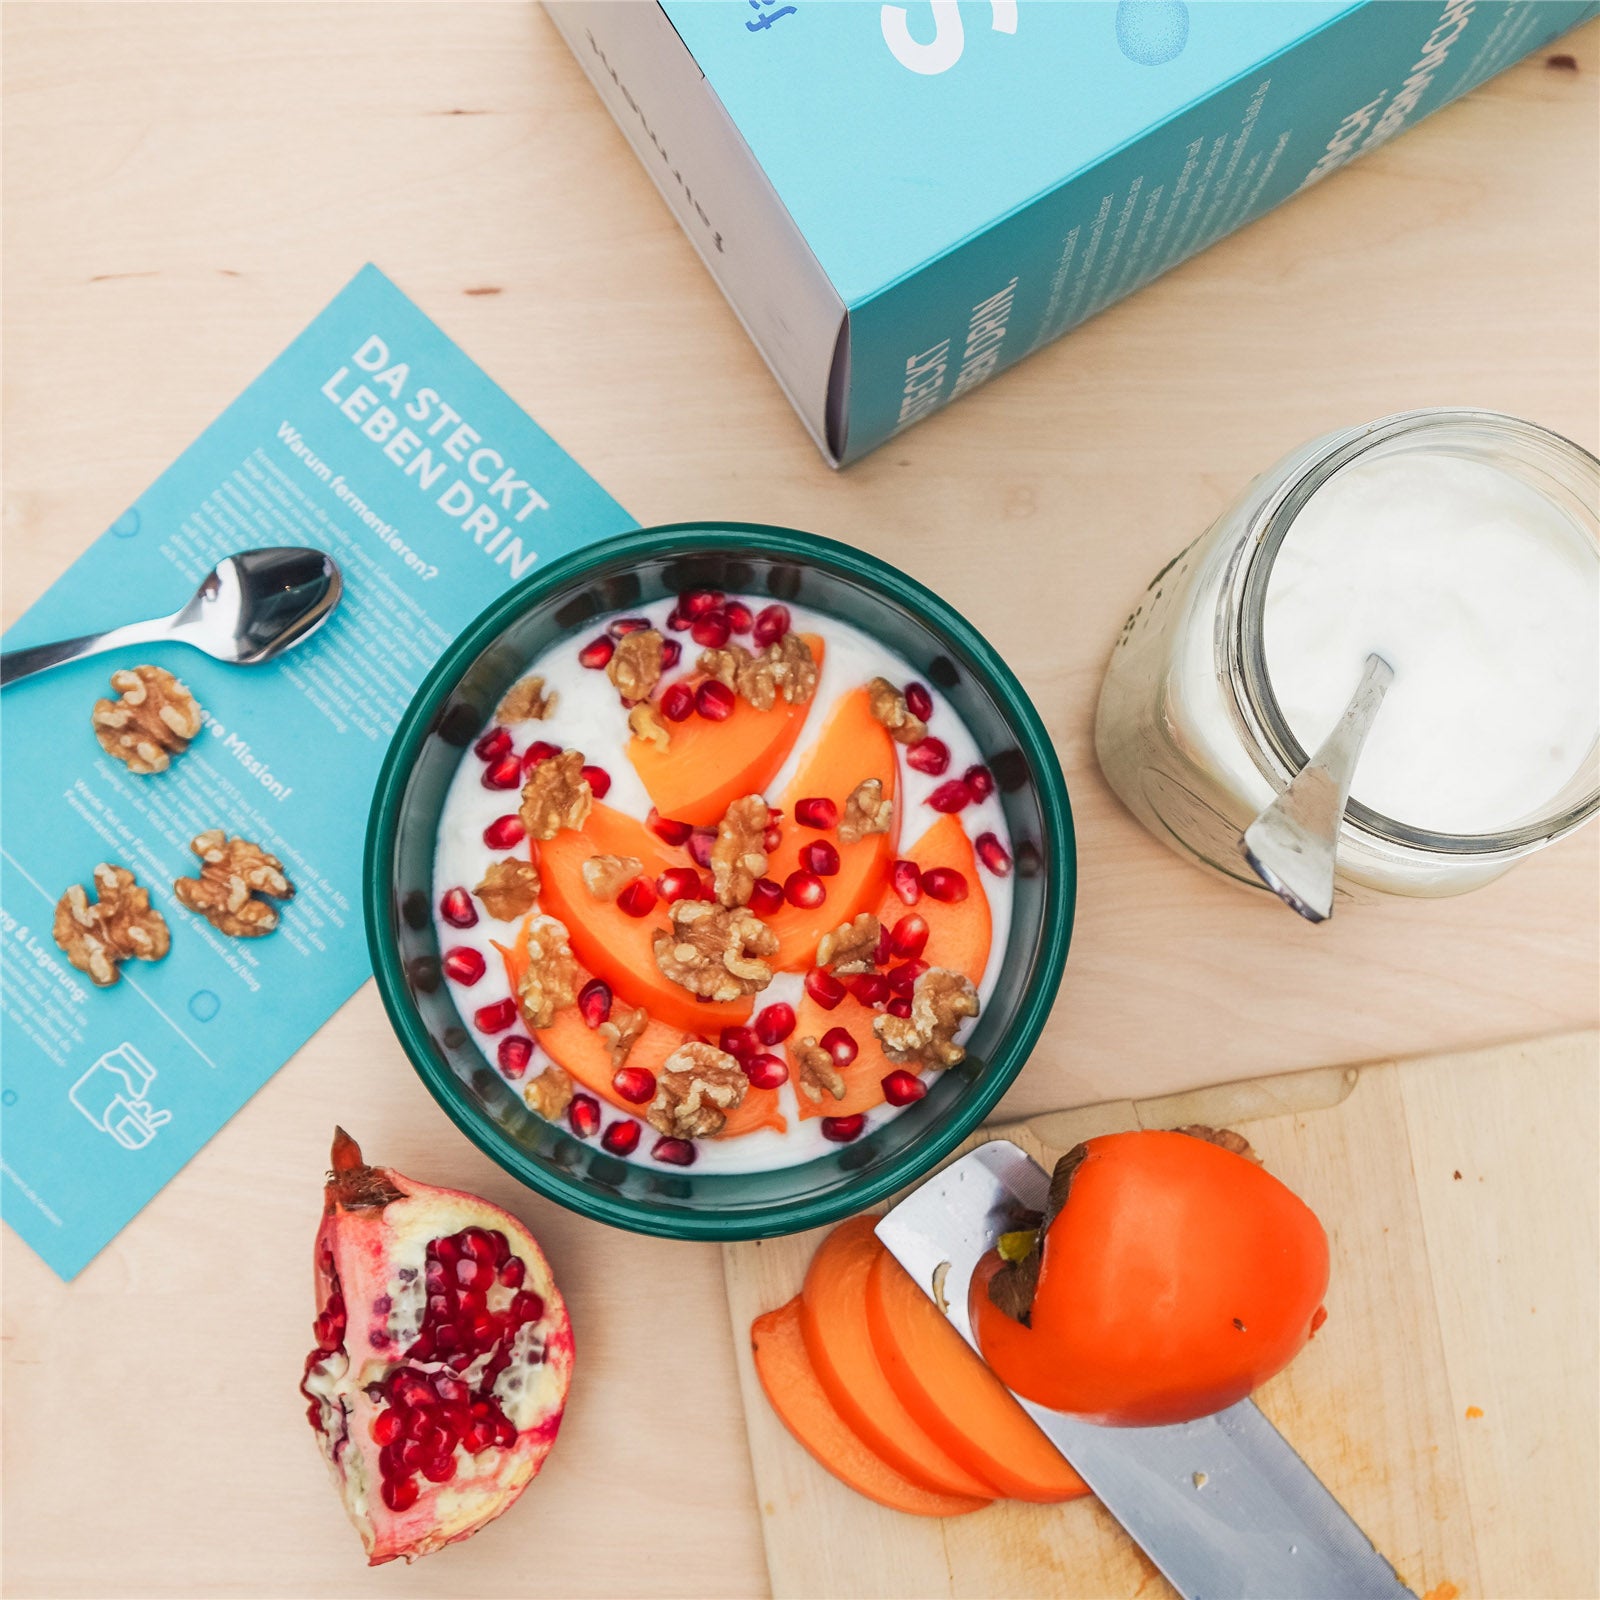 Joghurt Starter Kit mit Joghurtbereiter -  Bio Joghurt selber machen